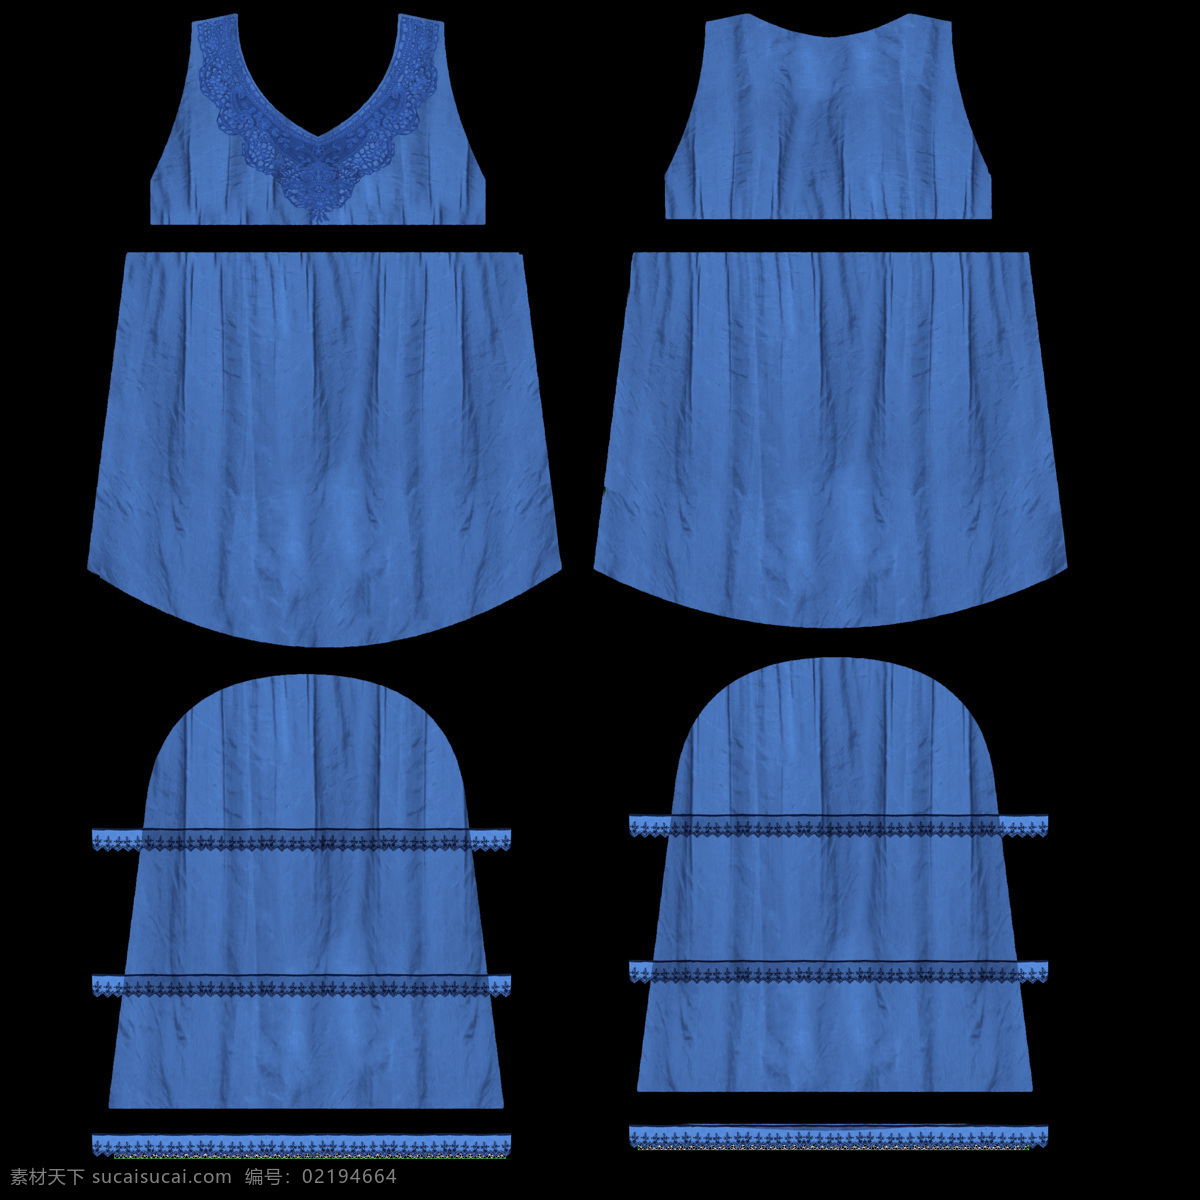 上衣 模型 蓝色 衣服 3d模型素材 其他3d模型